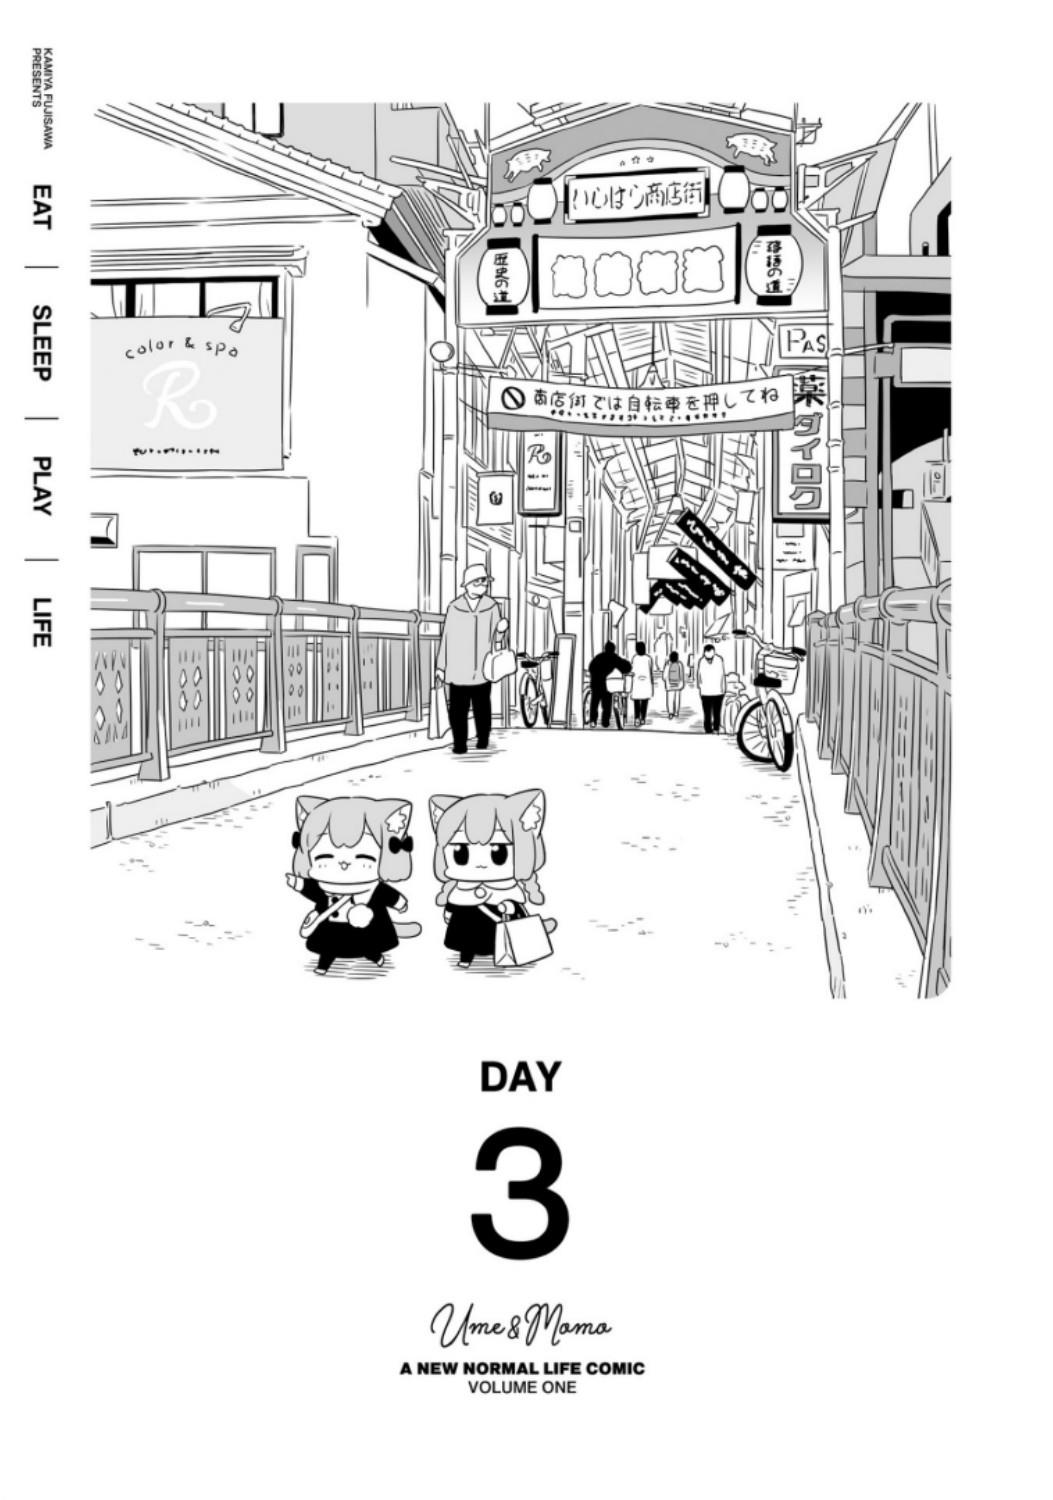 Ume To Momo No Futsuu No Kurashi Vol.1 Chapter 3: Day 3 - Picture 1